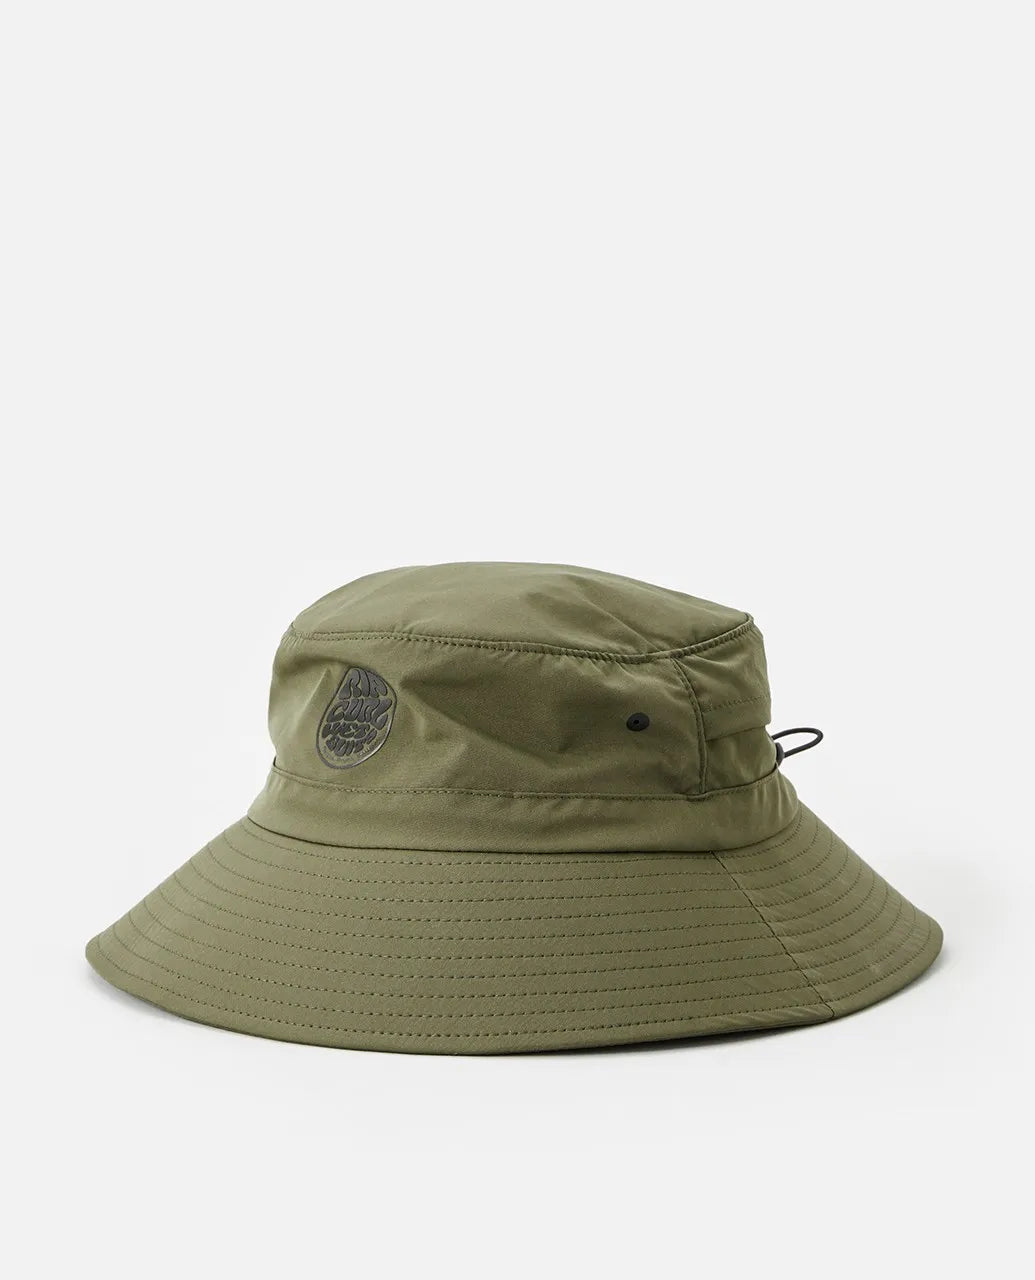 Ripcurl Surf Series Bucket Hat Hats Dark Olive L-XL